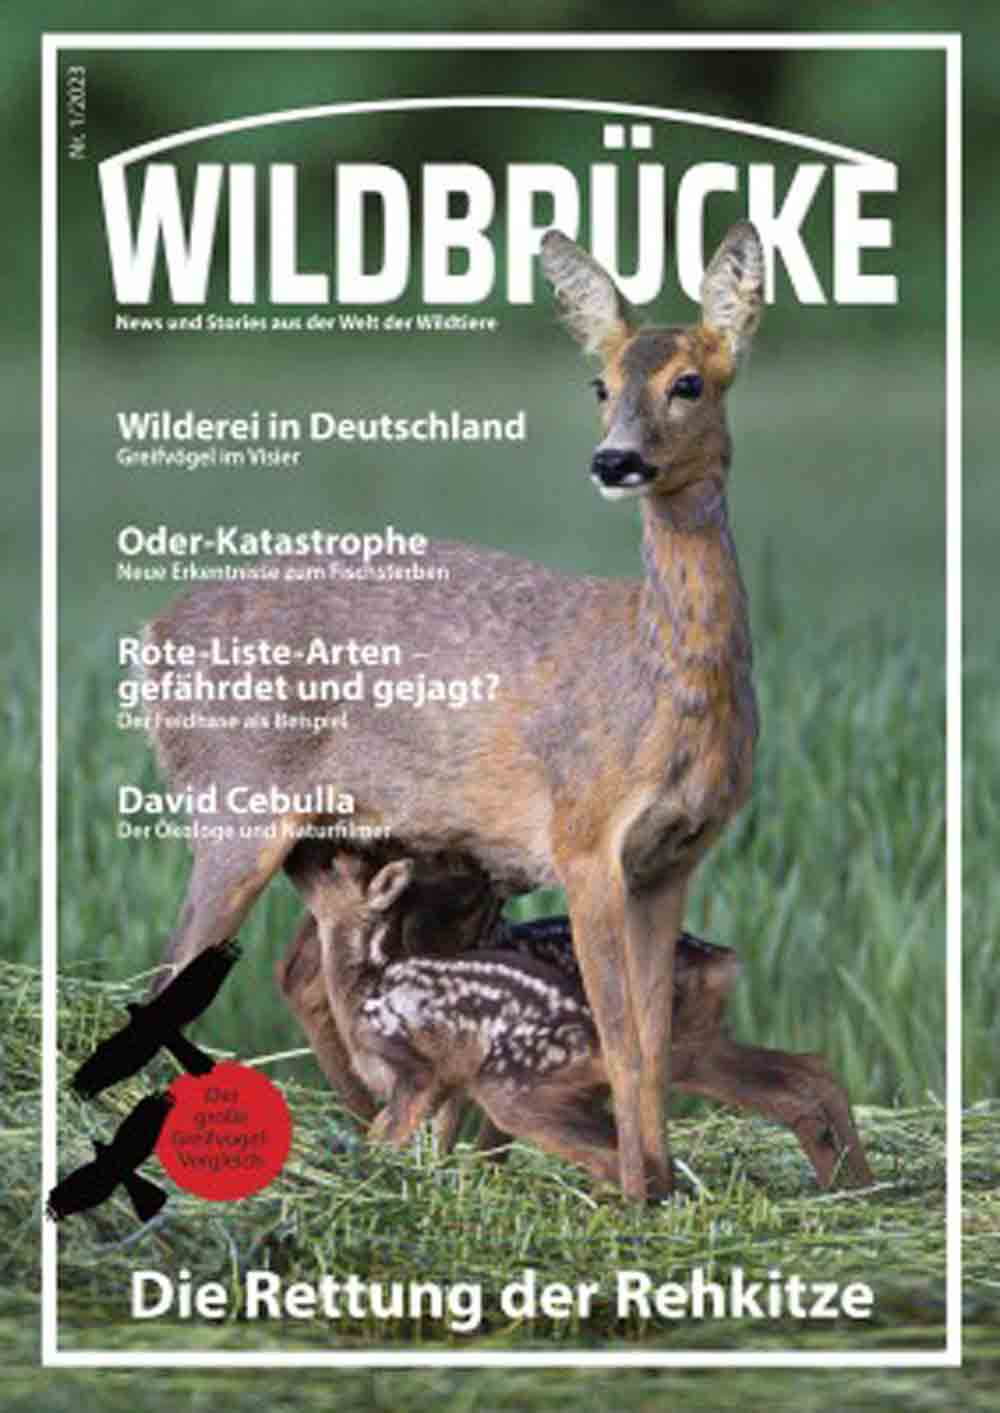 Wildbrücke – neues Online Magazin schlägt Brücke zwischen Menschen und Wildtieren